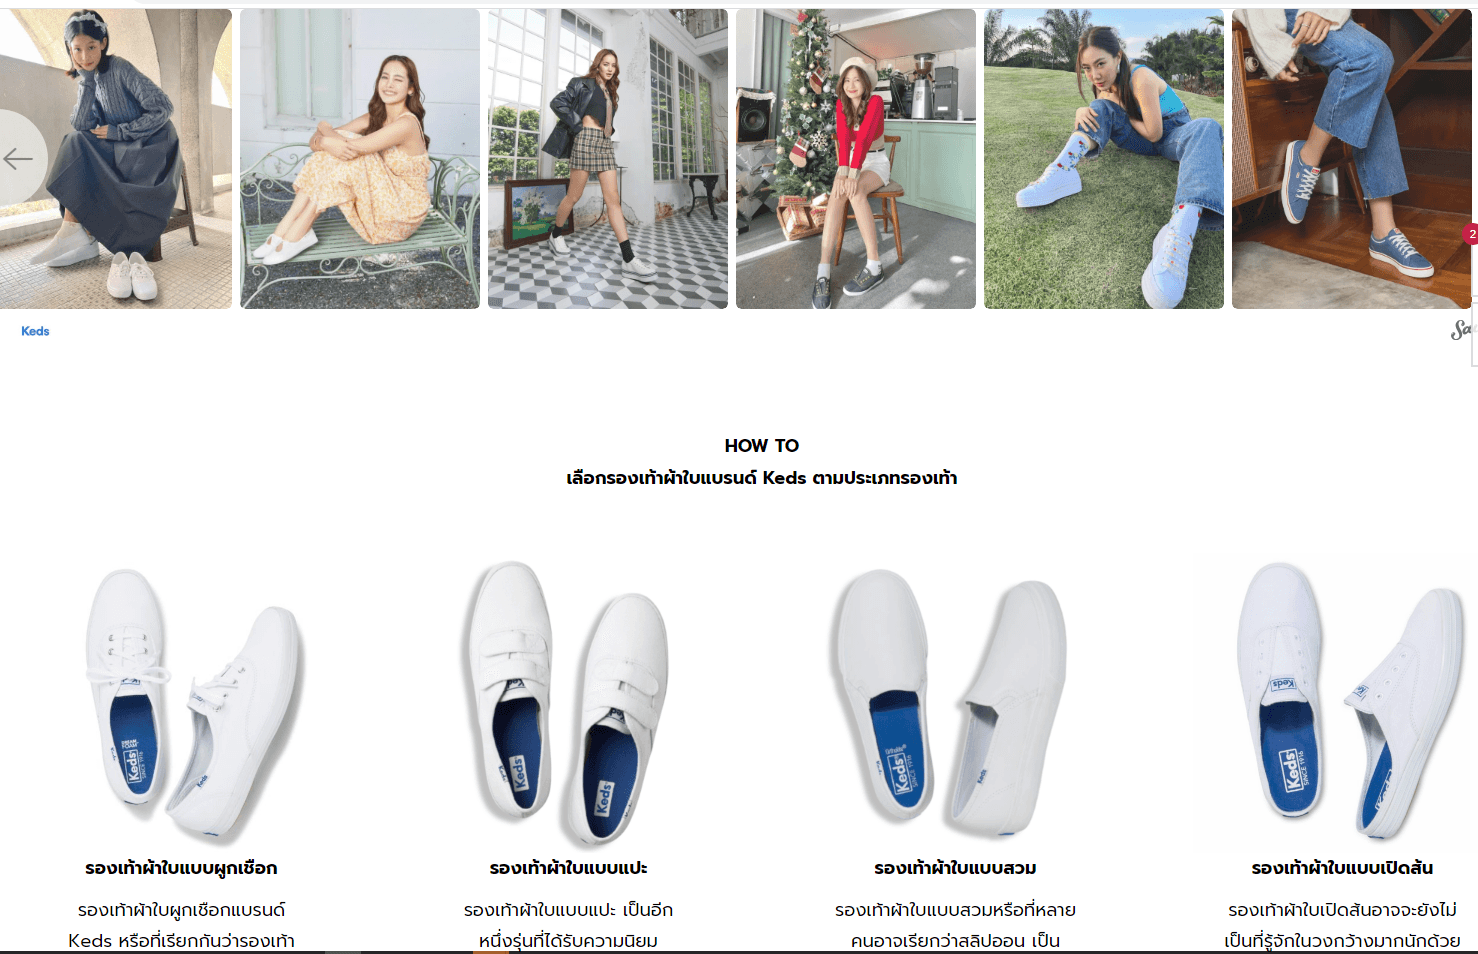 ภาพหน้าปก Keds แบรนด์รองเท้าสัญชาติอเมริกัน เป็นรองเท้าผ้าใบที่ครองใจสาวๆ ที่:1